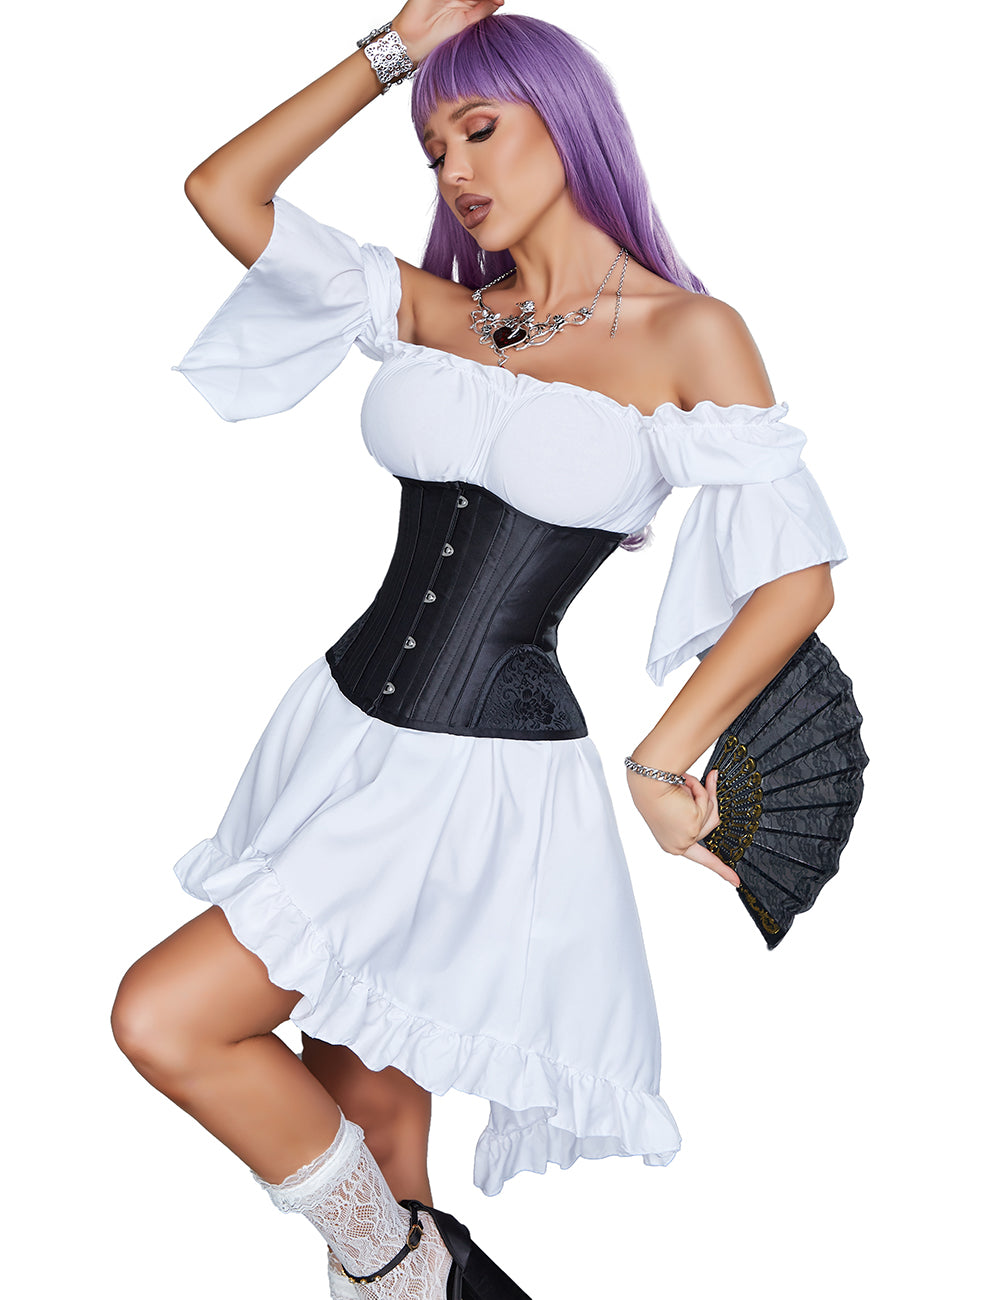 ohyeah woman satin corset jacquard underbust corset black corset with 14 pieces soft steel bones corsets body shaper